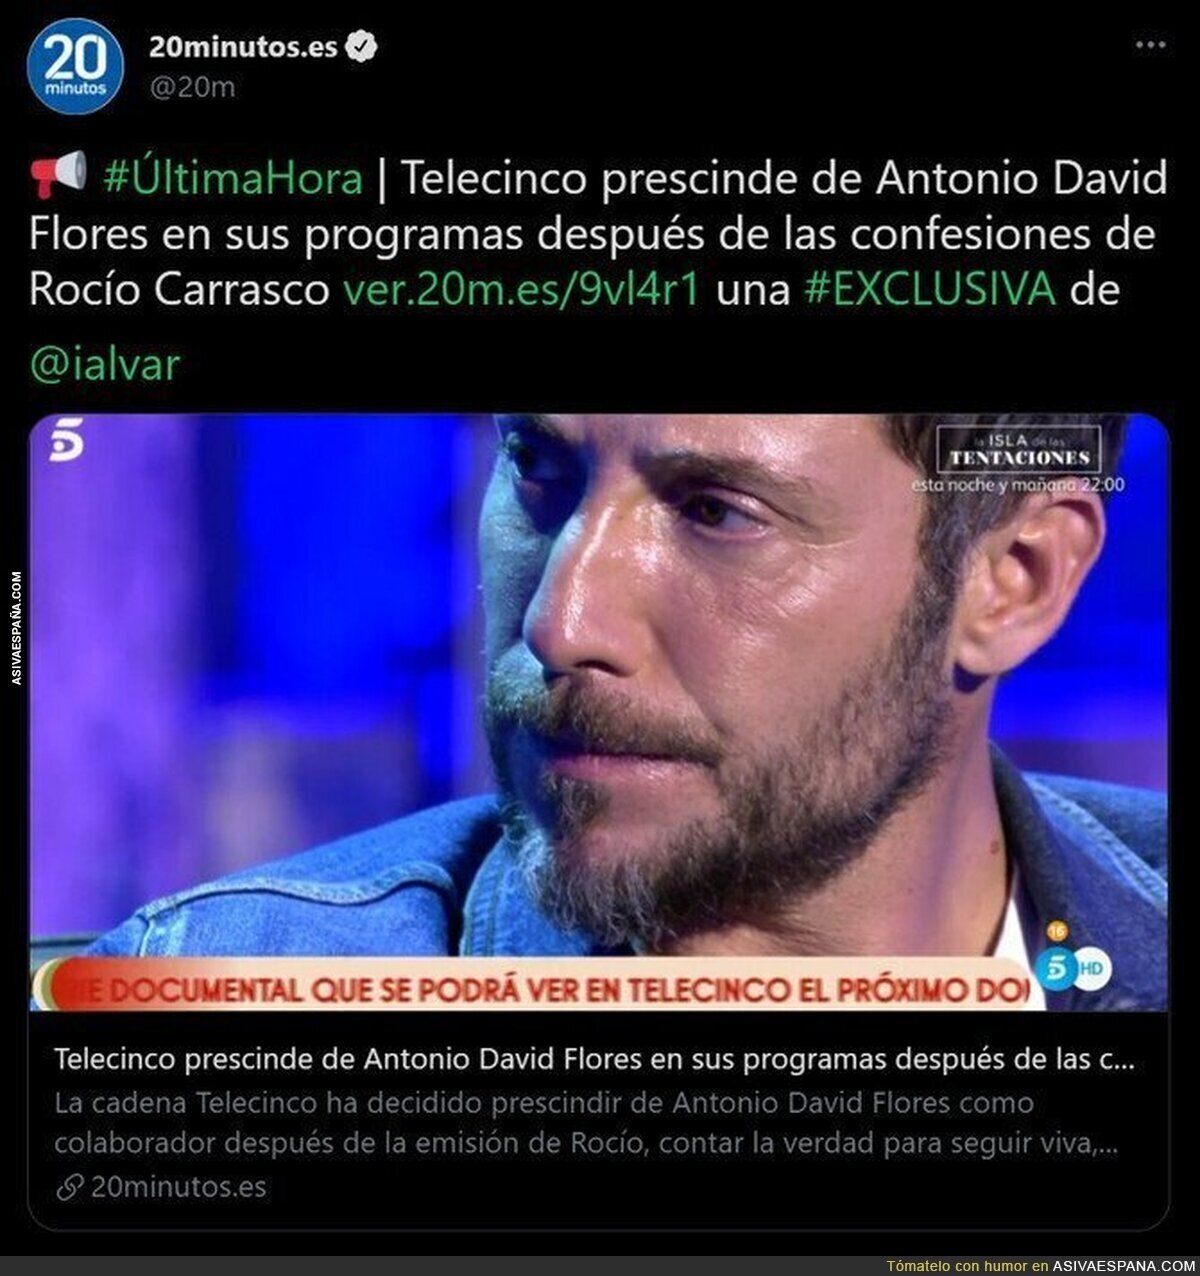 ¡Antonio David Flores despedido de Telecinco!